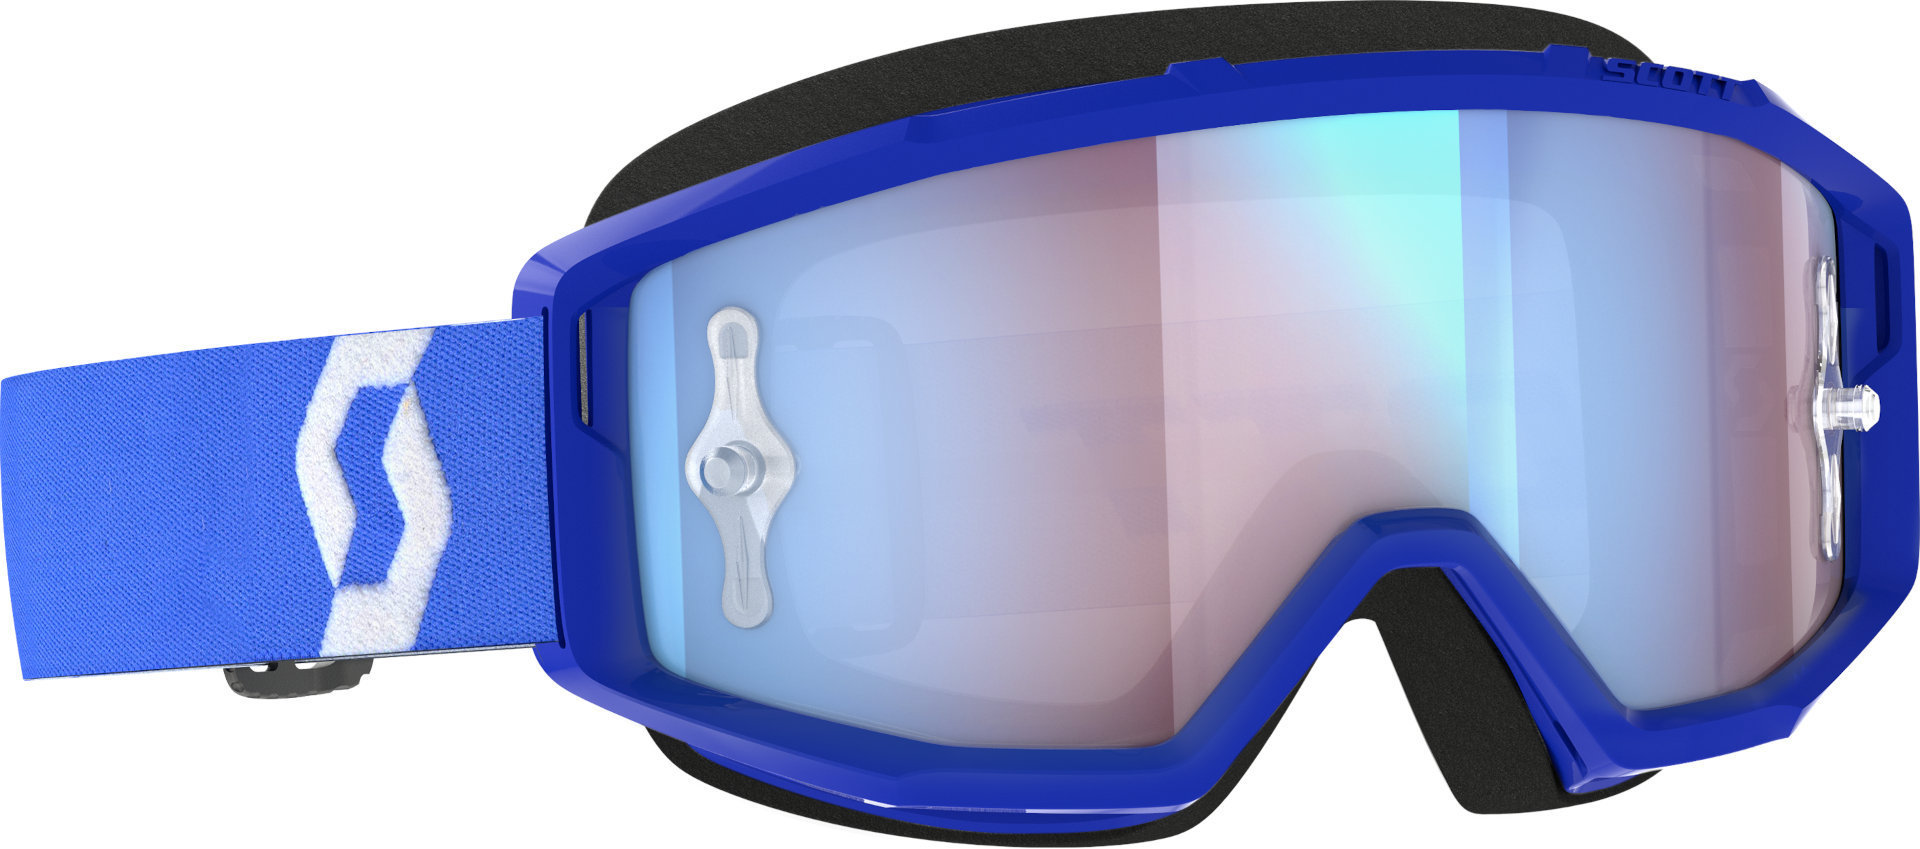 Мотоциклетные очки Scott Primal с логотипом, синий/белый